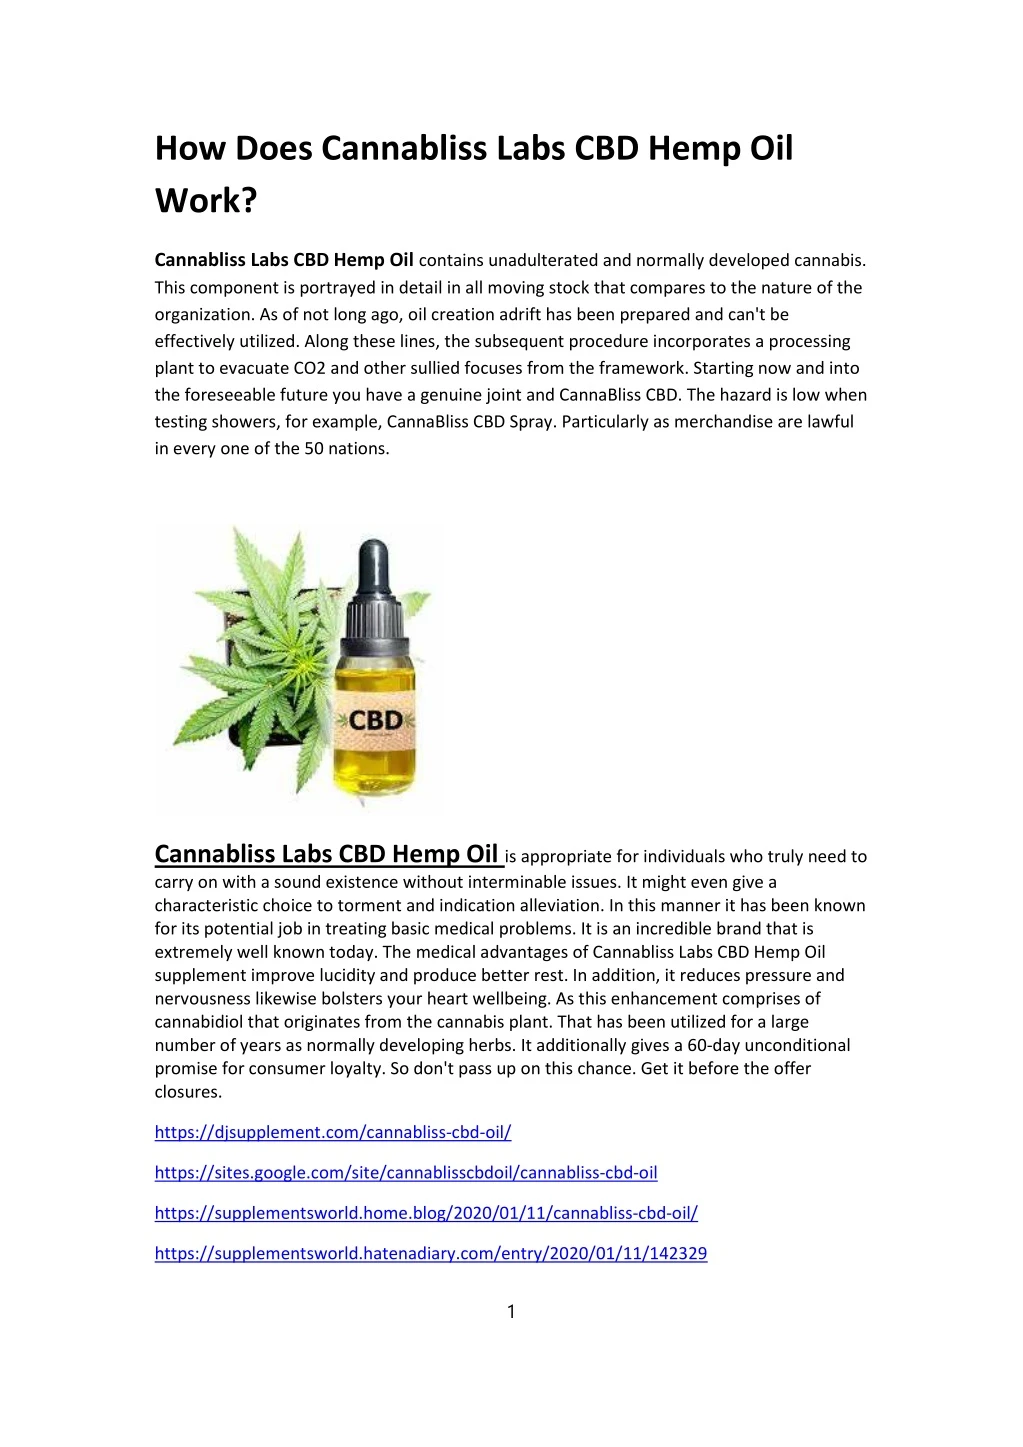 how does cannabliss labs cbd hemp oil work